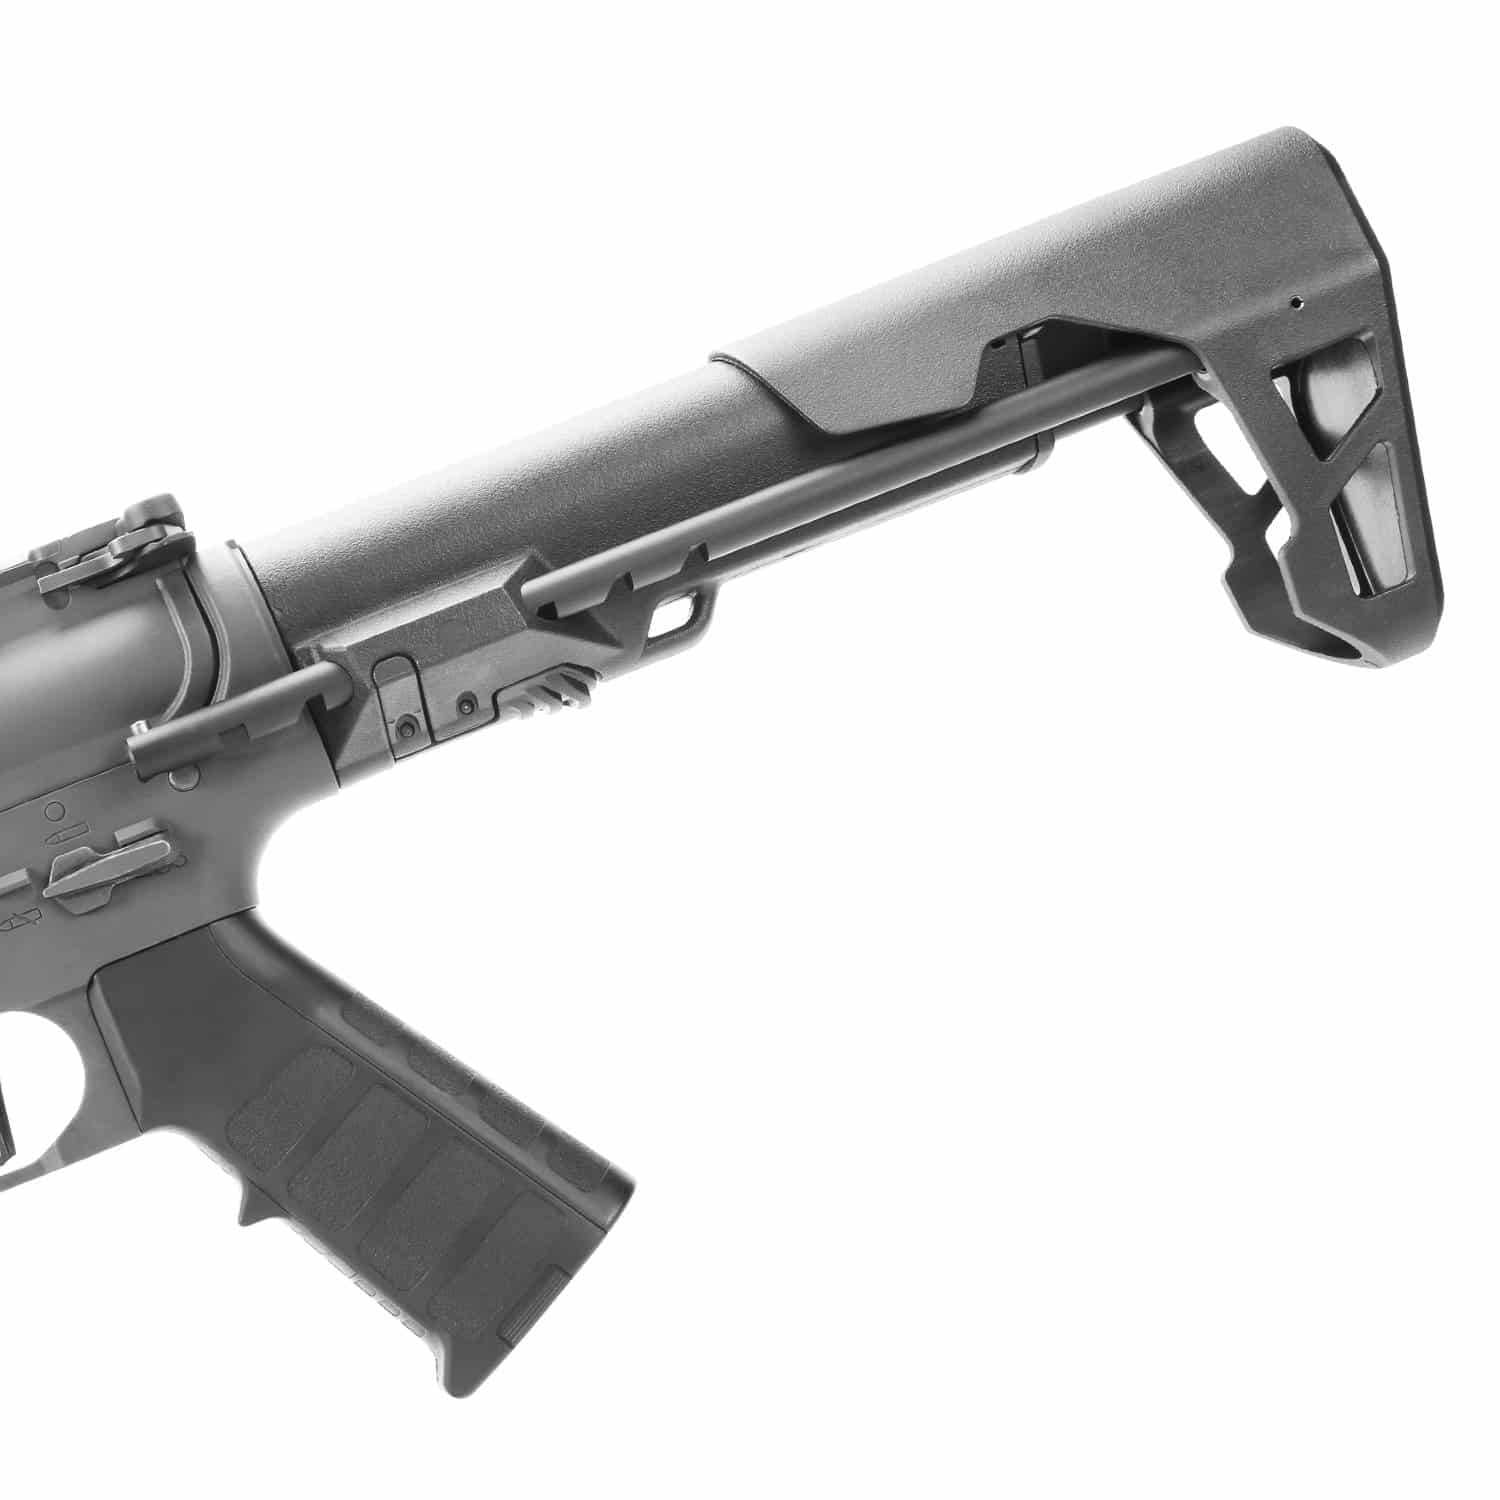 King Arms PDW 9mm SBR Long - Gun Metal Grey